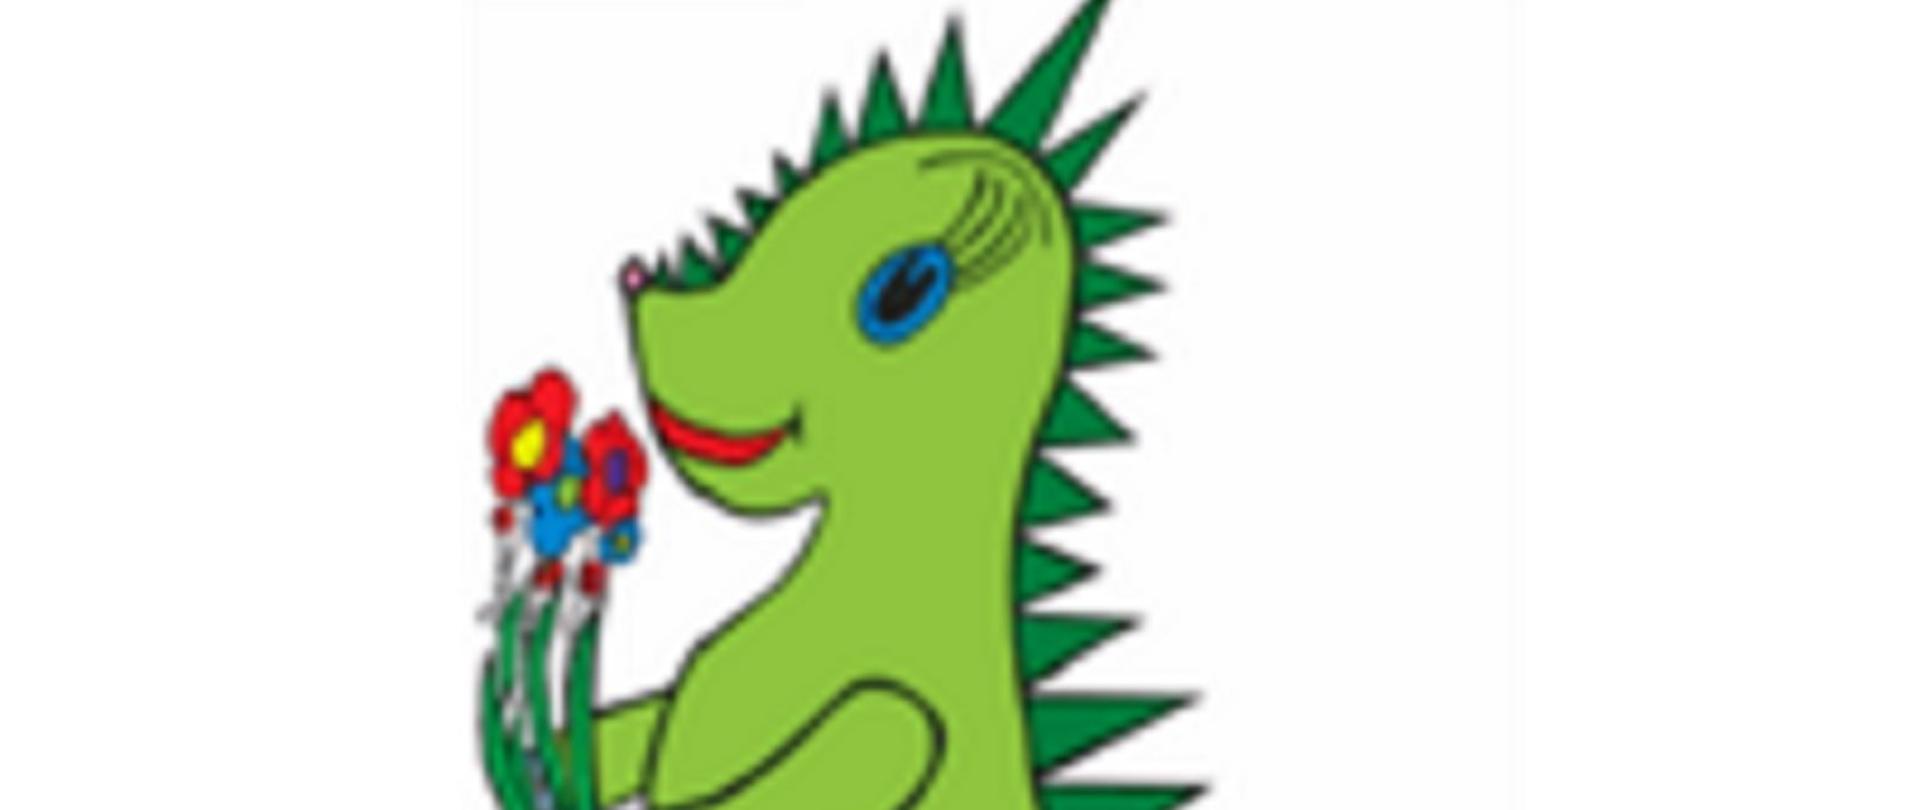 Grafika do Programu czyste powietrze przedstawiająca uśmiechniętego smoka trzymającego kwiatki cieszącego się z czystego powietrza